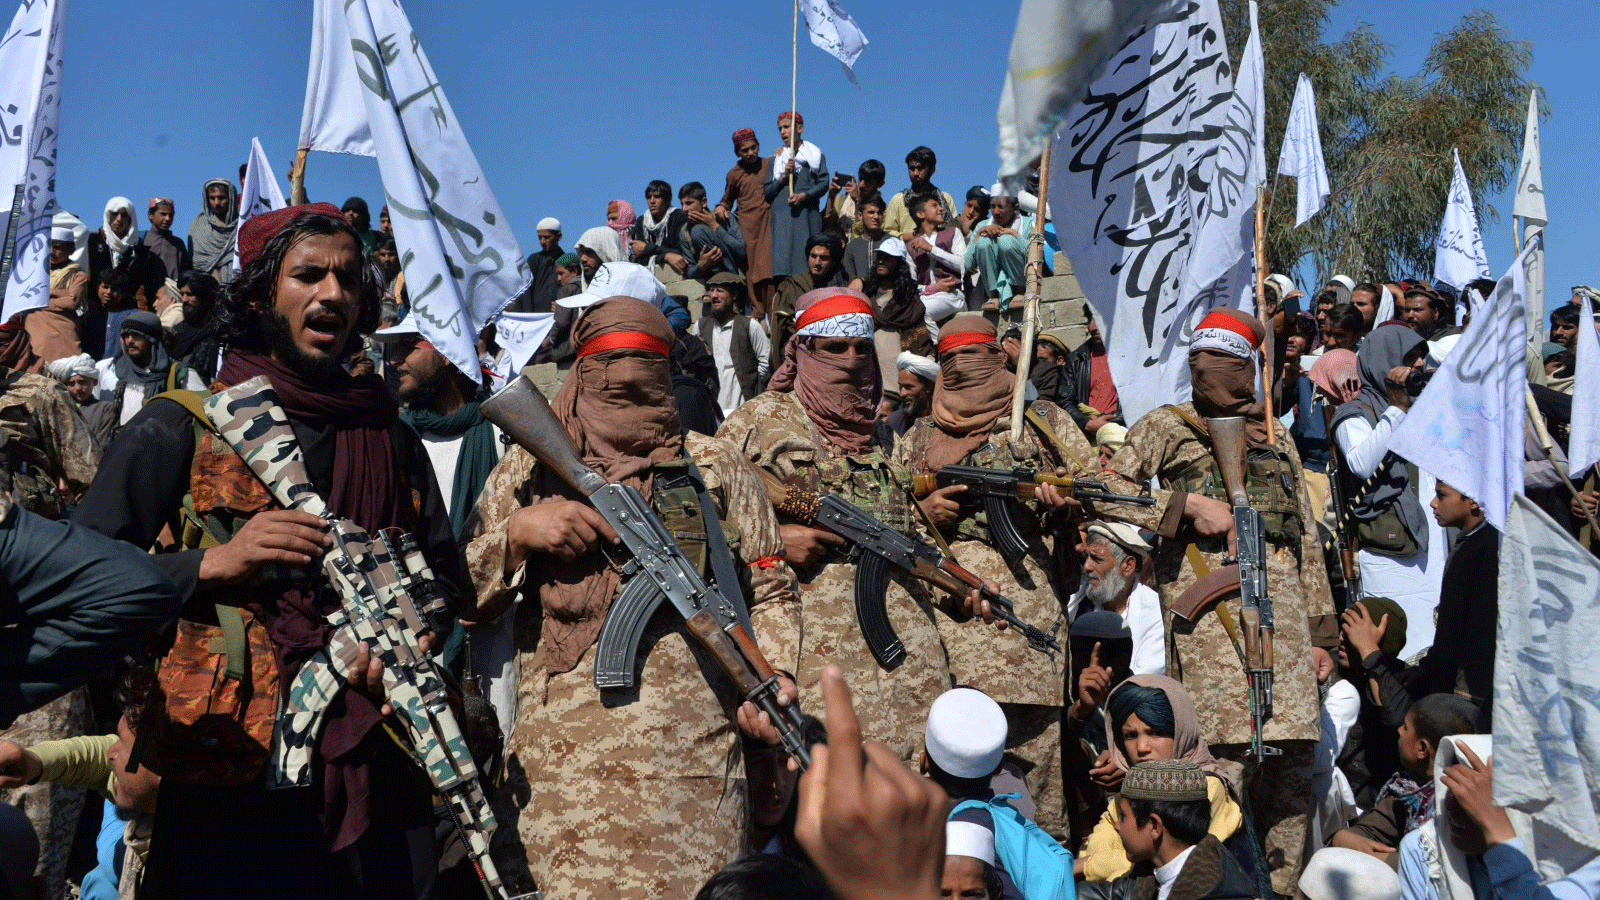 مقاتلو طالبان الأفغان والقرويون يحضرون تجمعاً للاحتفال باتفاق السلام وانتصارهم في الصراع الأفغاني، في منطقة ألينجار في ولاية لغمان، أفغانستان، 2 آذار/مارس 2020